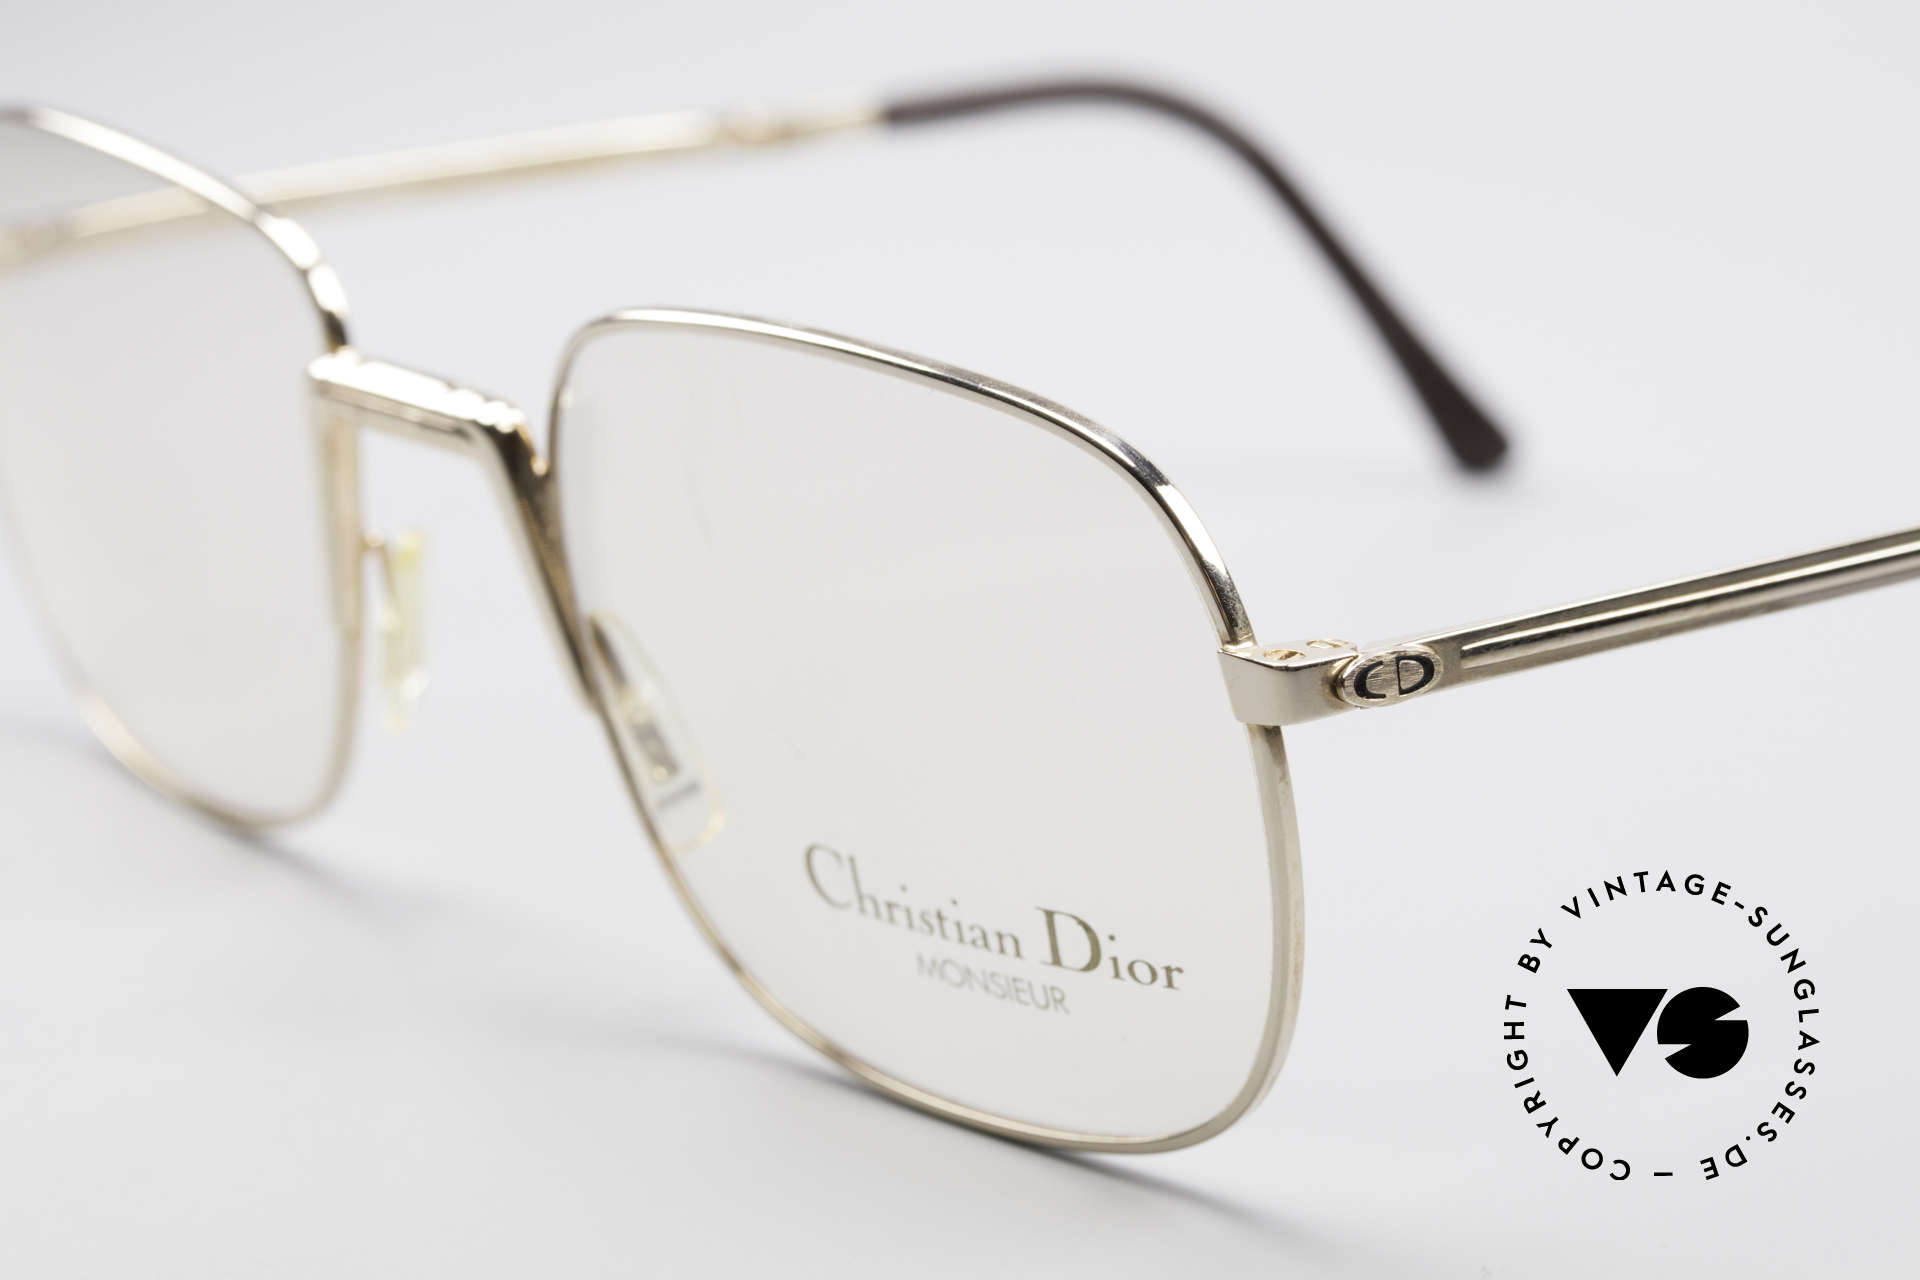 Glasses Christian Dior 2288 Monsieur Folding Eyeglasses